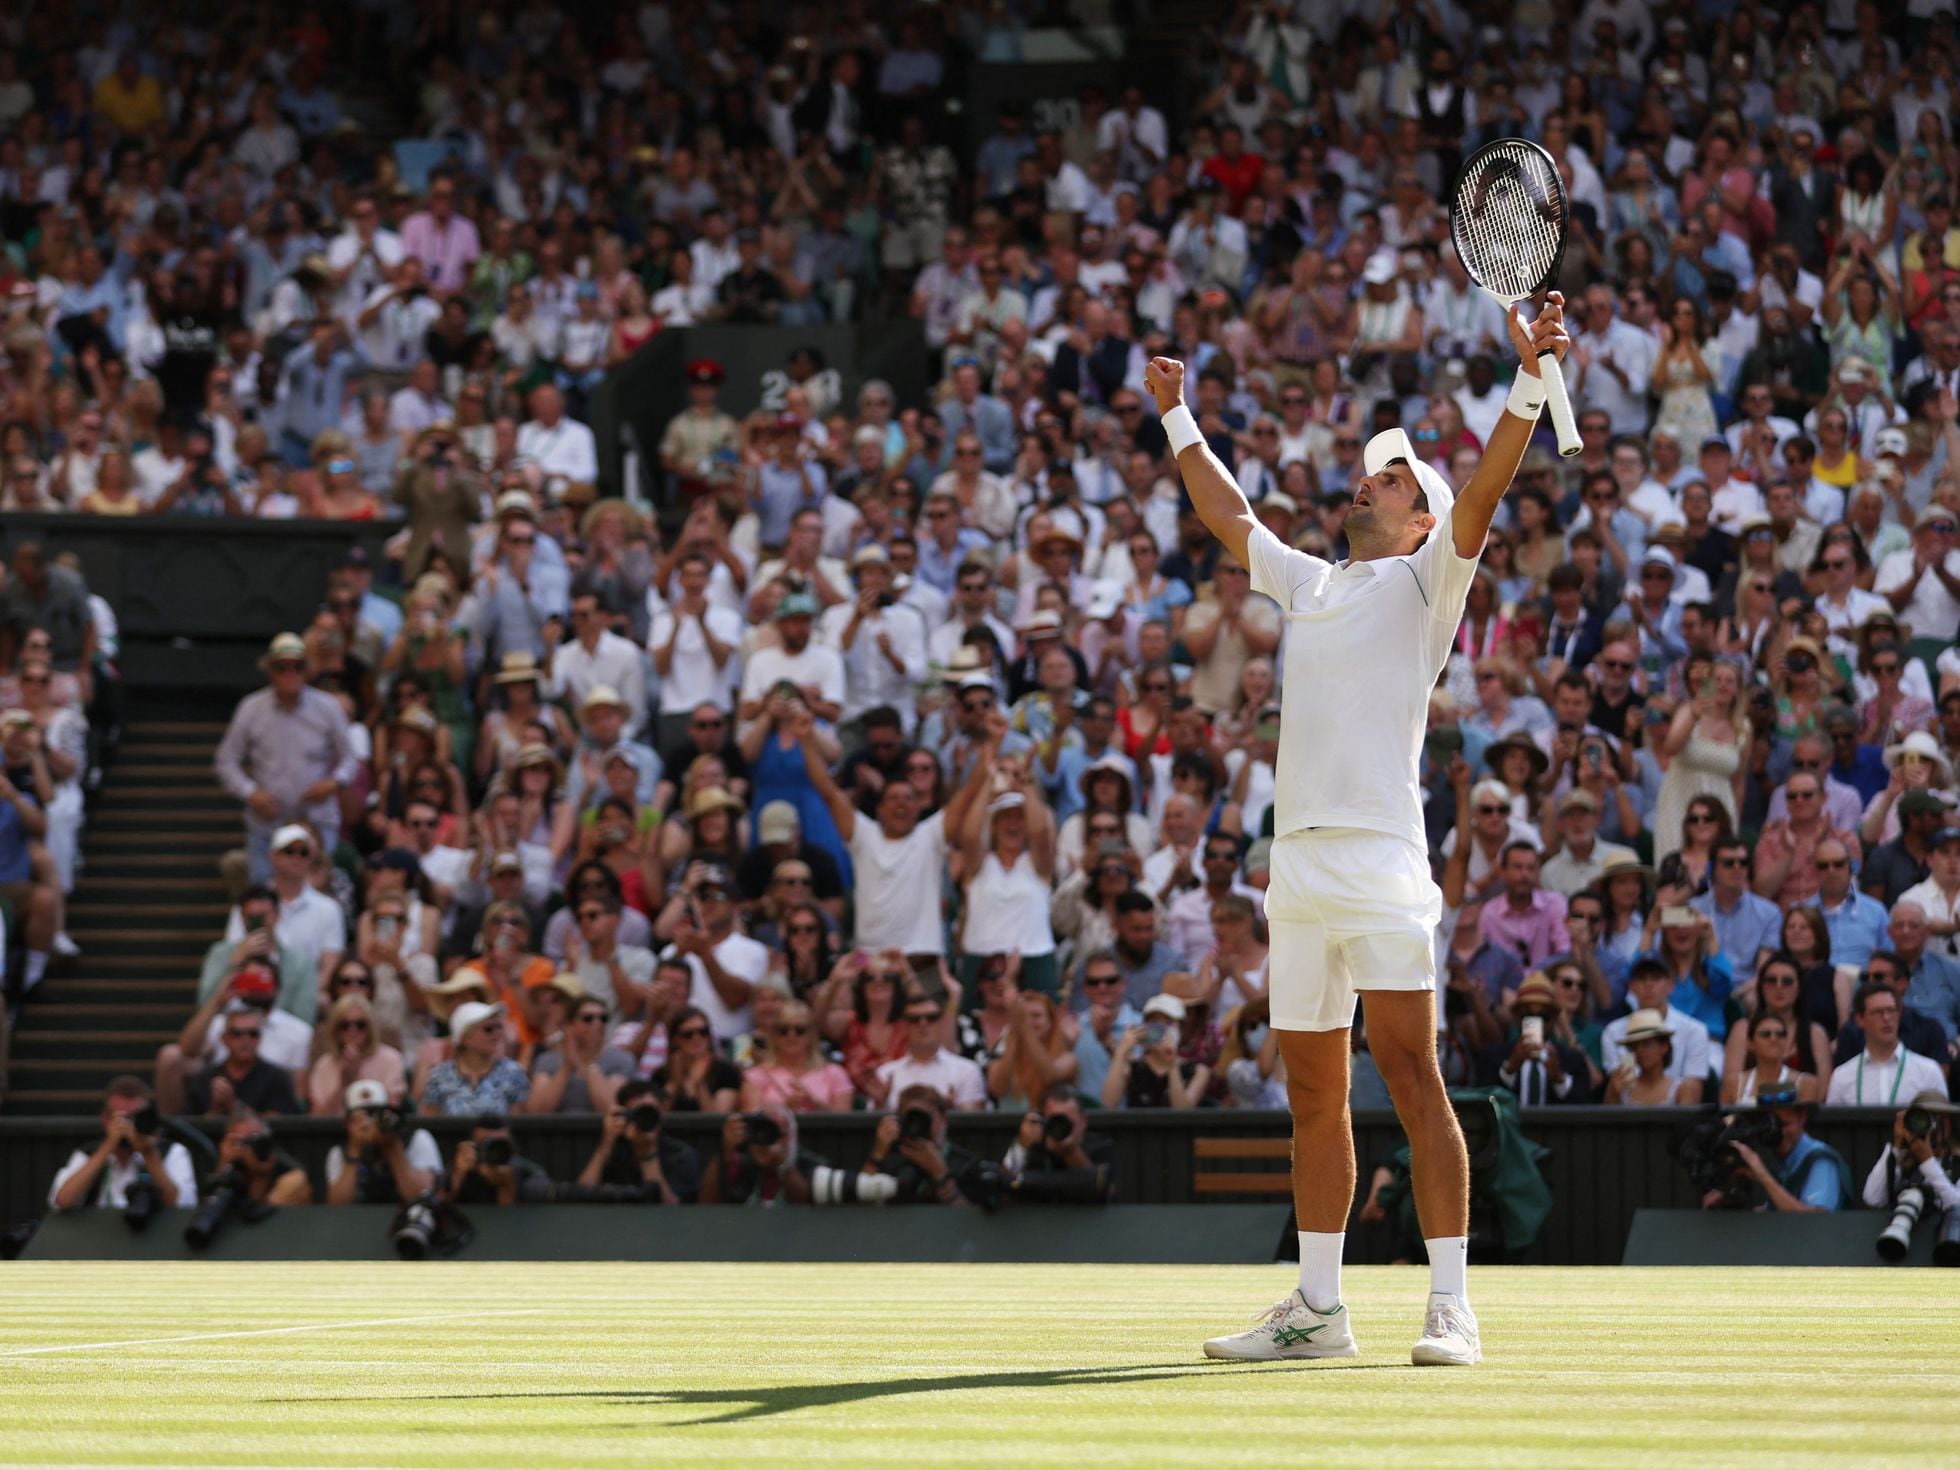 Reacciones de la final de Wimbledon | Djokovic, igualar los siete títulos de “Siempre soñé con aquí. Ganarlo es un orgullo” | Deportes | EL PAÍS